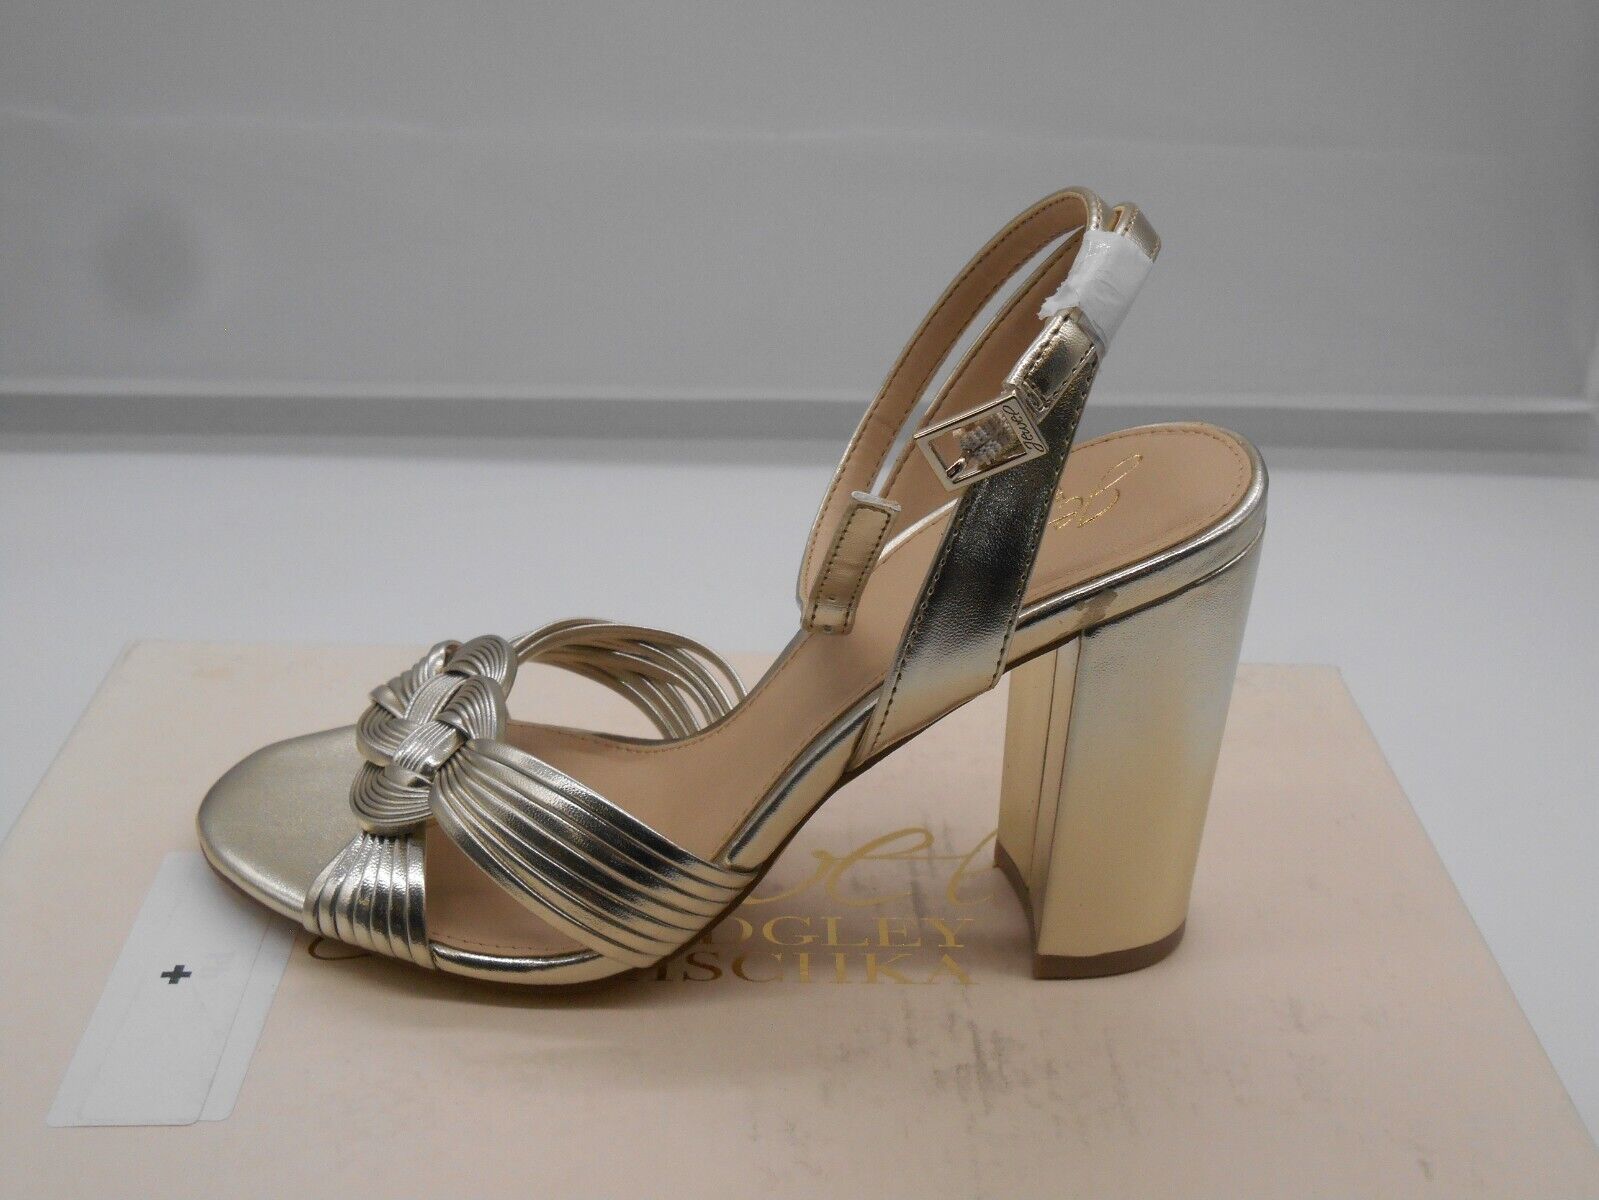 Jewel by BADGLEY MISCHKA Krystal Woven Formal Ankle Strap Heels Block Heel